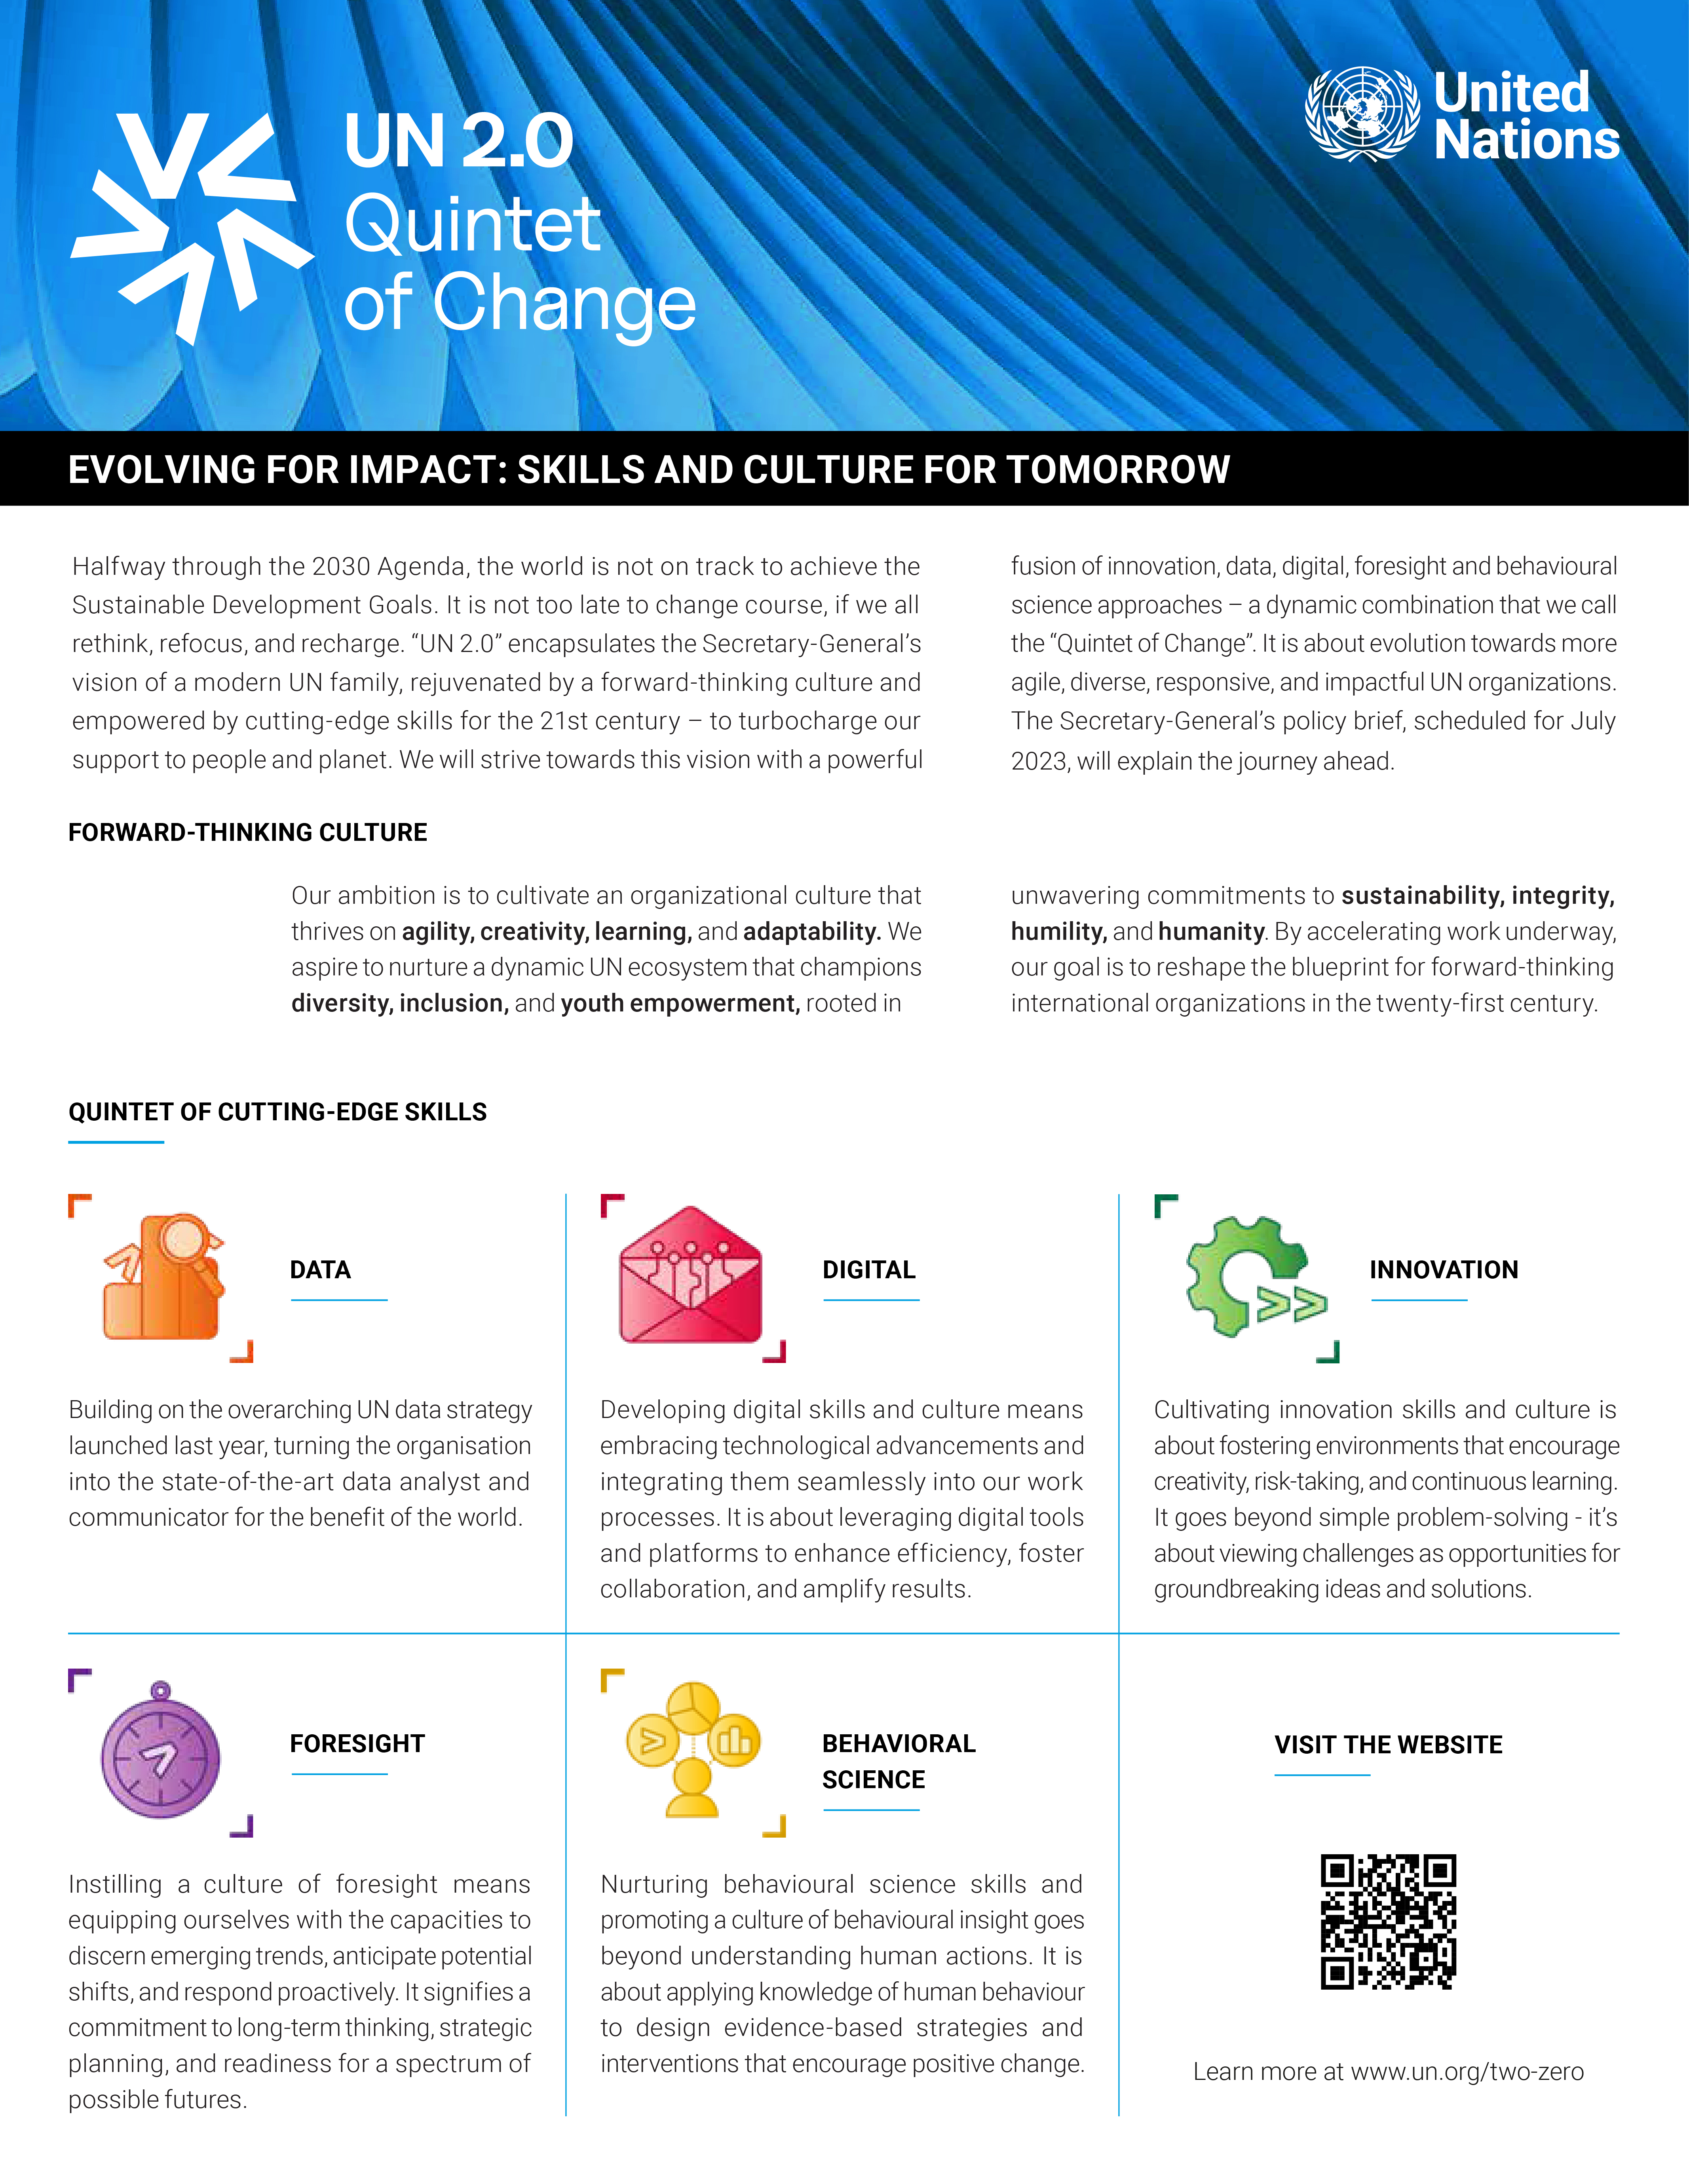 UN 2.0 Quintet of Change